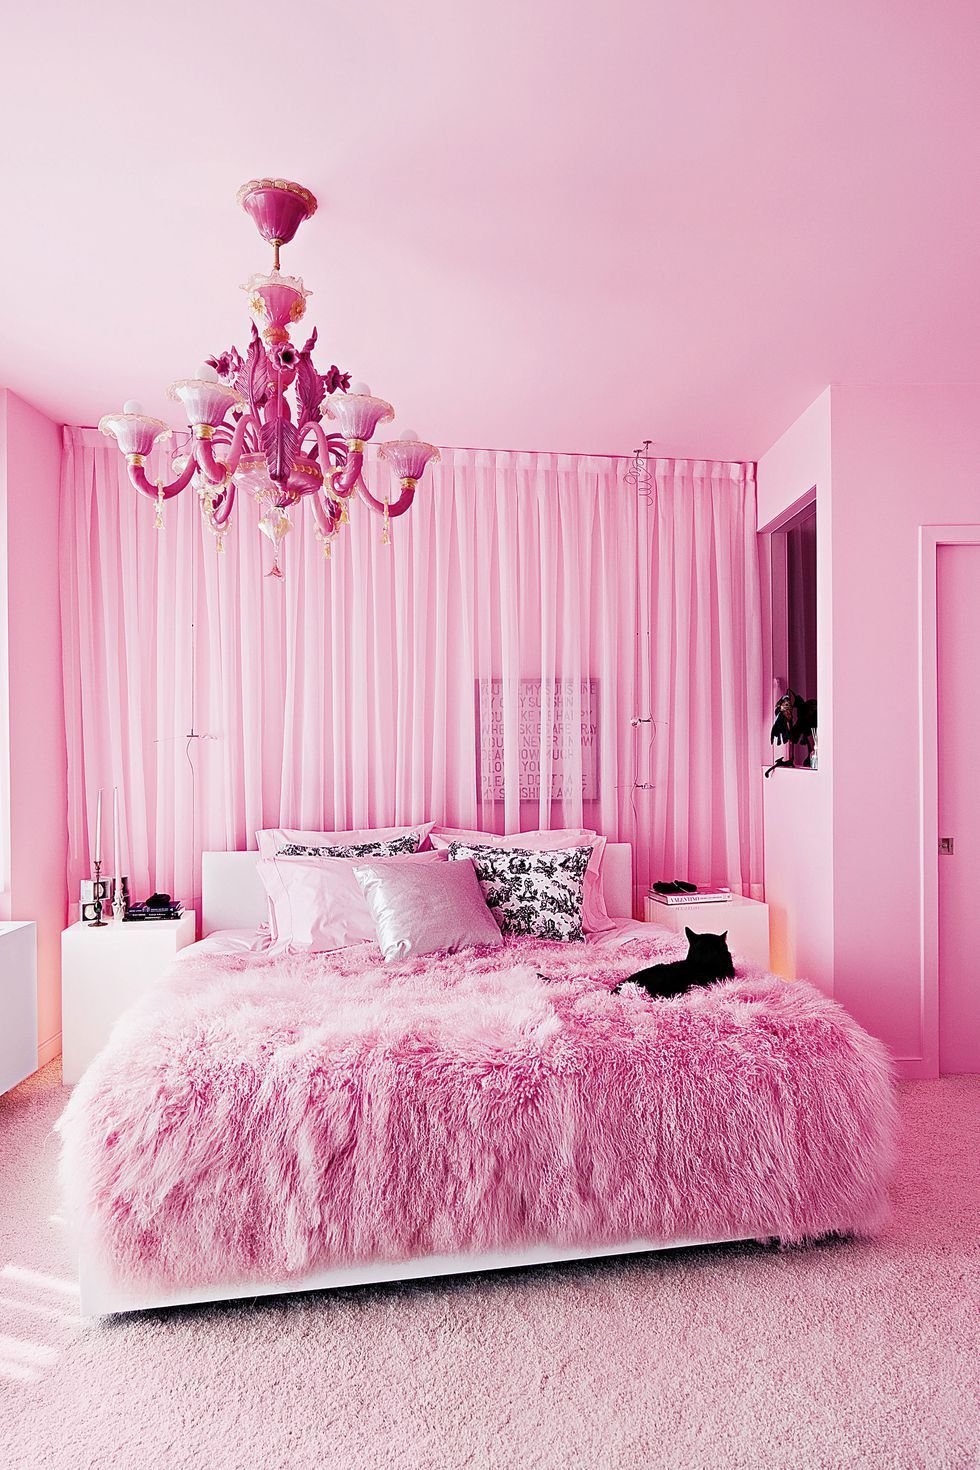 Жизнь в розовом цвете